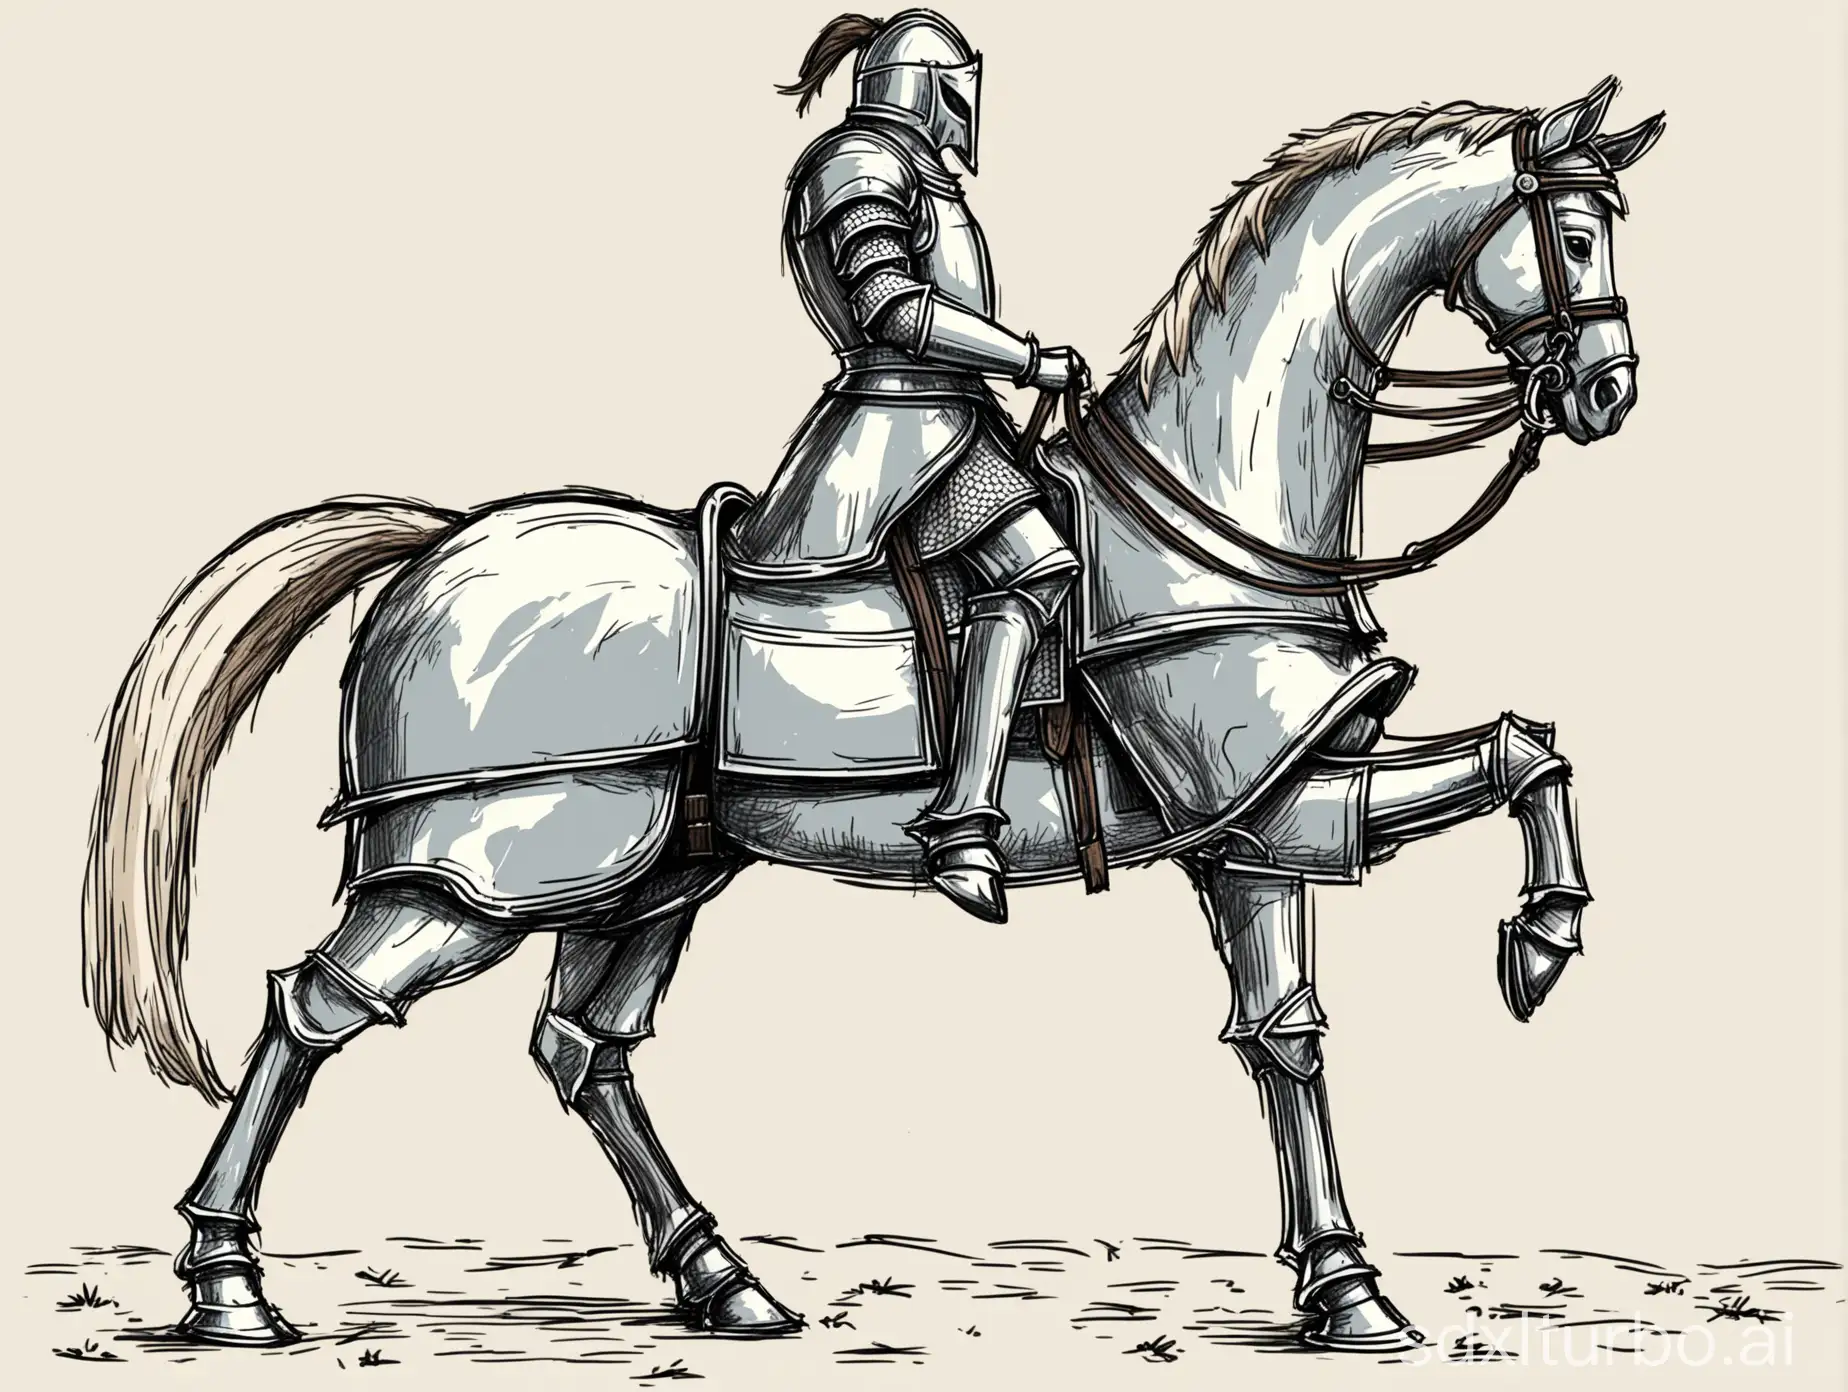 нарисуй лошадь, которая стоит на земле с поднятой головой, в полный рост, боком. одно копыто поднято. стиль рисования - быстрый набросок добавь на лошадь рыцаря в доспехах, который держит поводья